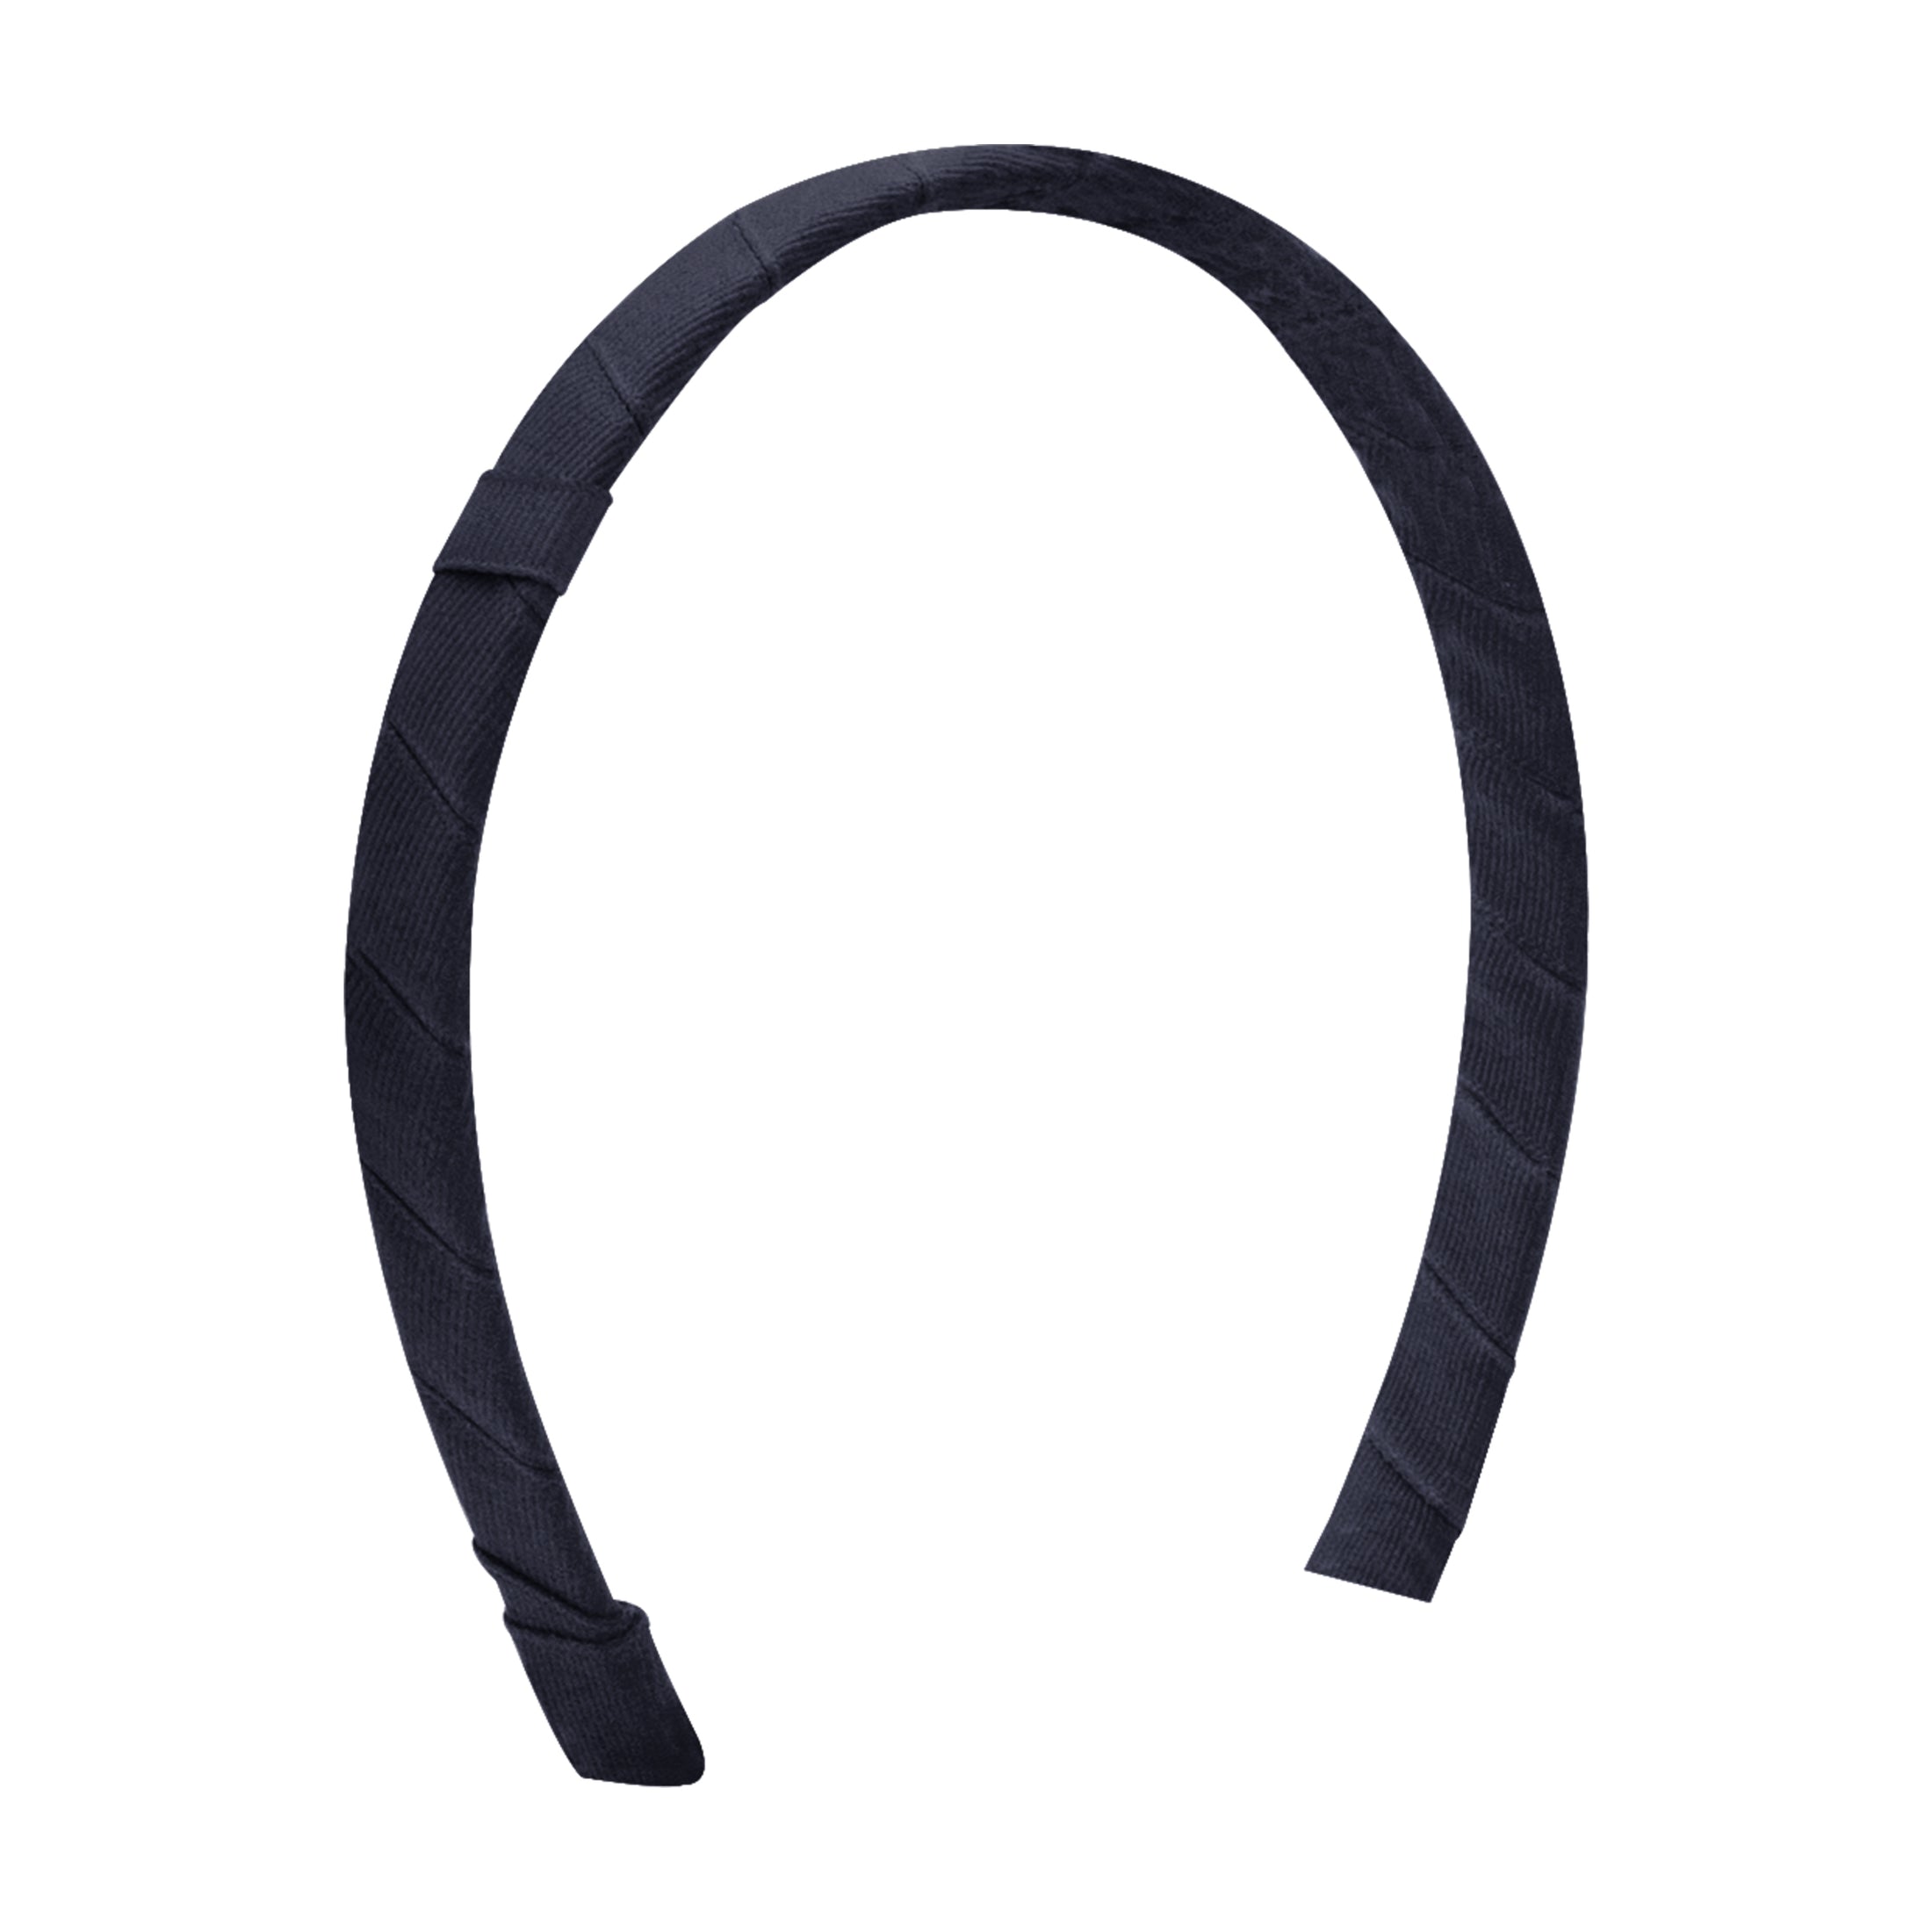 Add-A-Bow Grosgrain Headband - 1/2in.